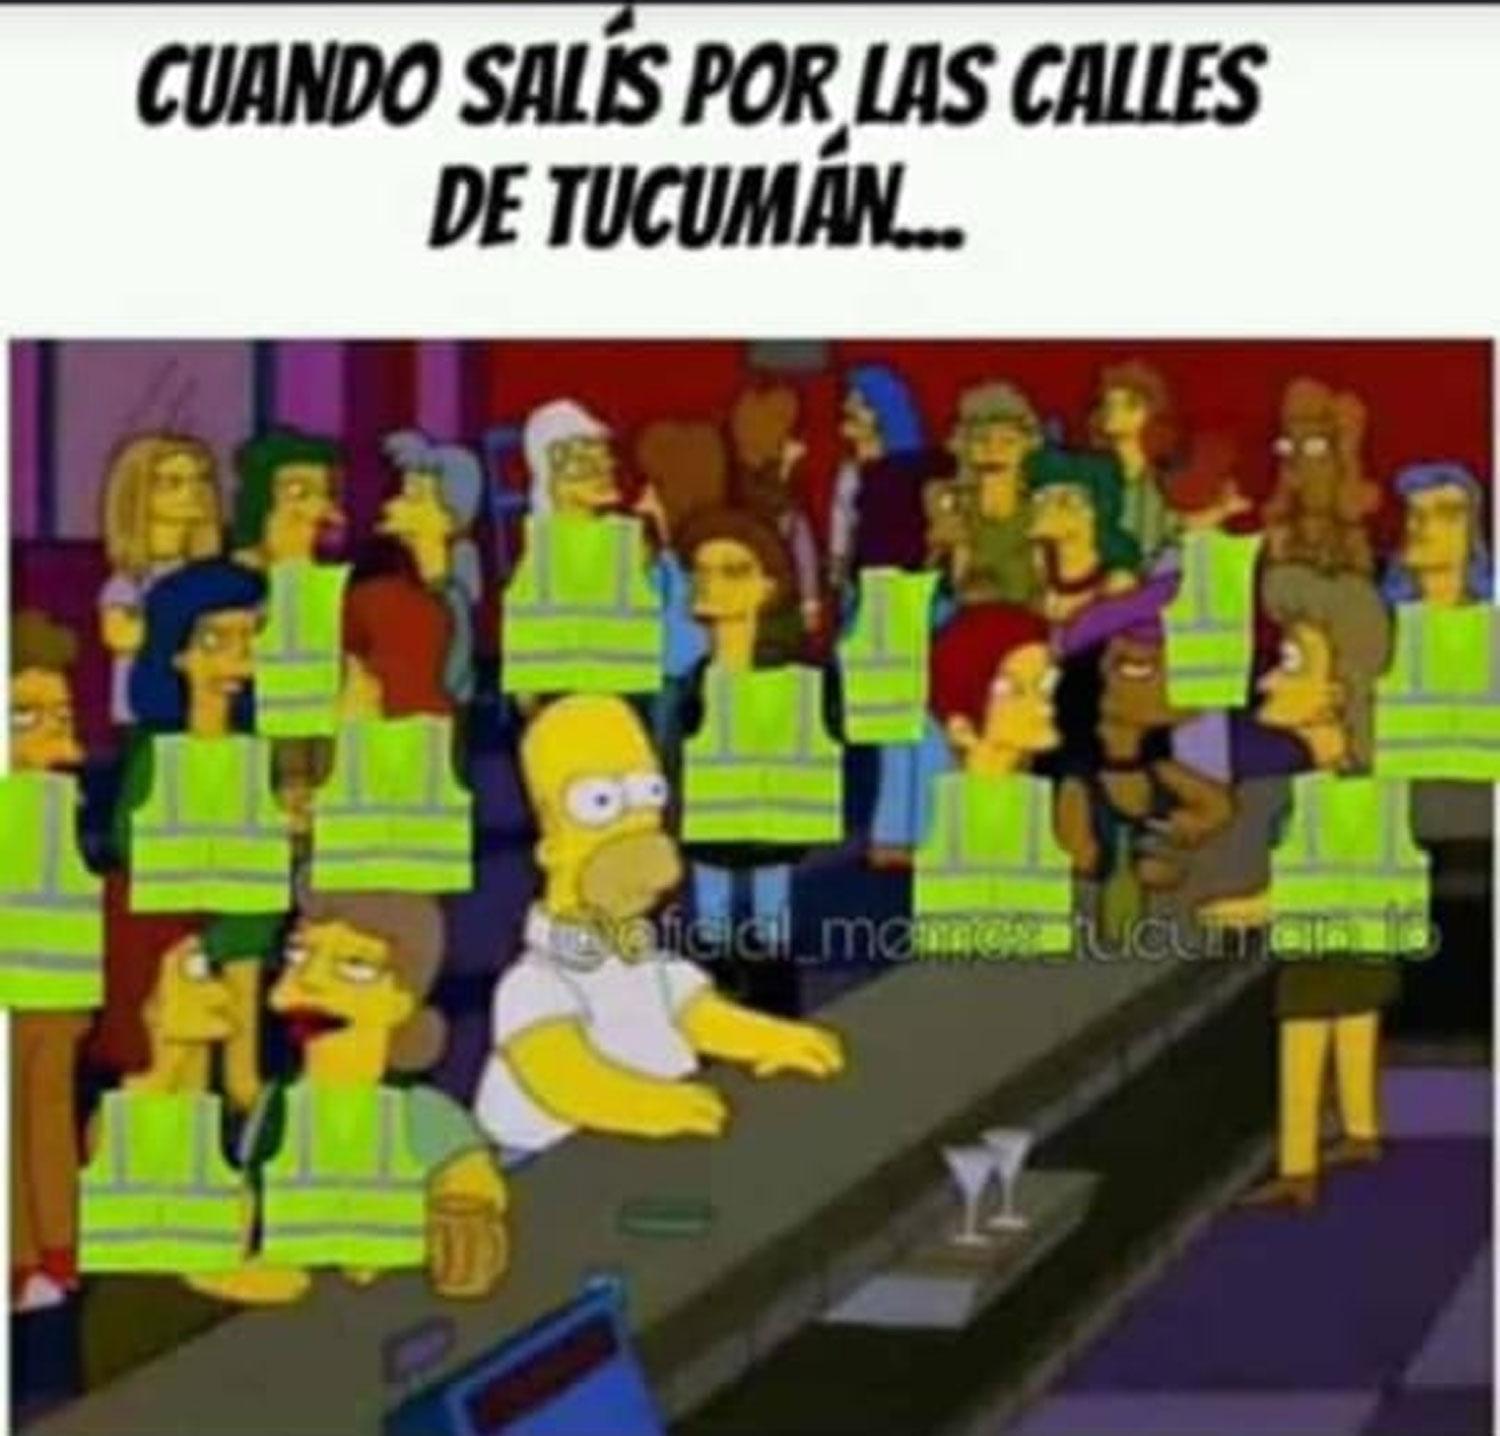 Los tucumanos se divirtieron compartiendo memes sobre los chalecos reflectivos